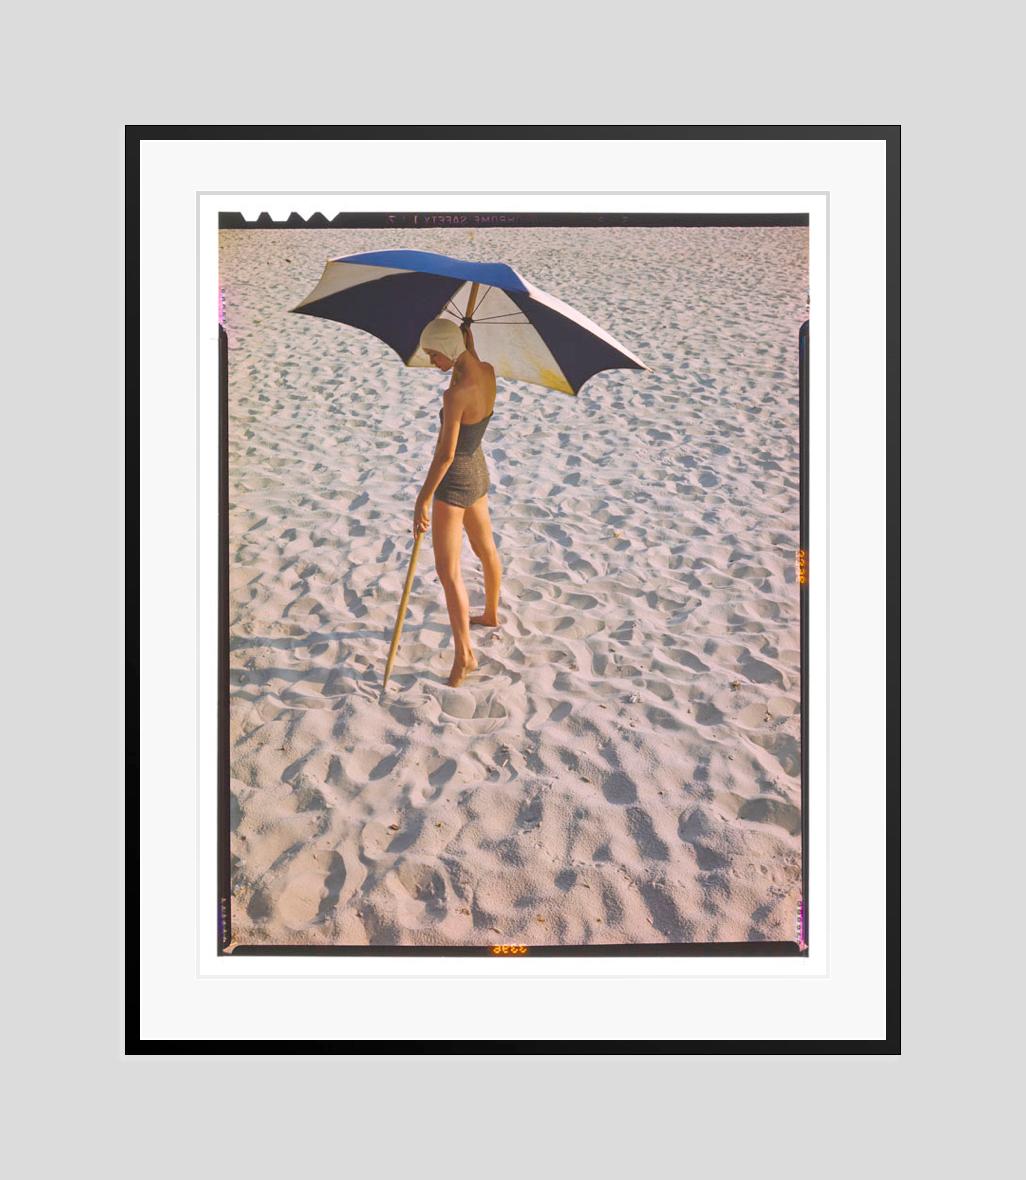 Mädchen am Strand 

1948

Modeshooting für Strandmode mit Sonnenschirmen, 1948

von Toni Frissell

16 x 20